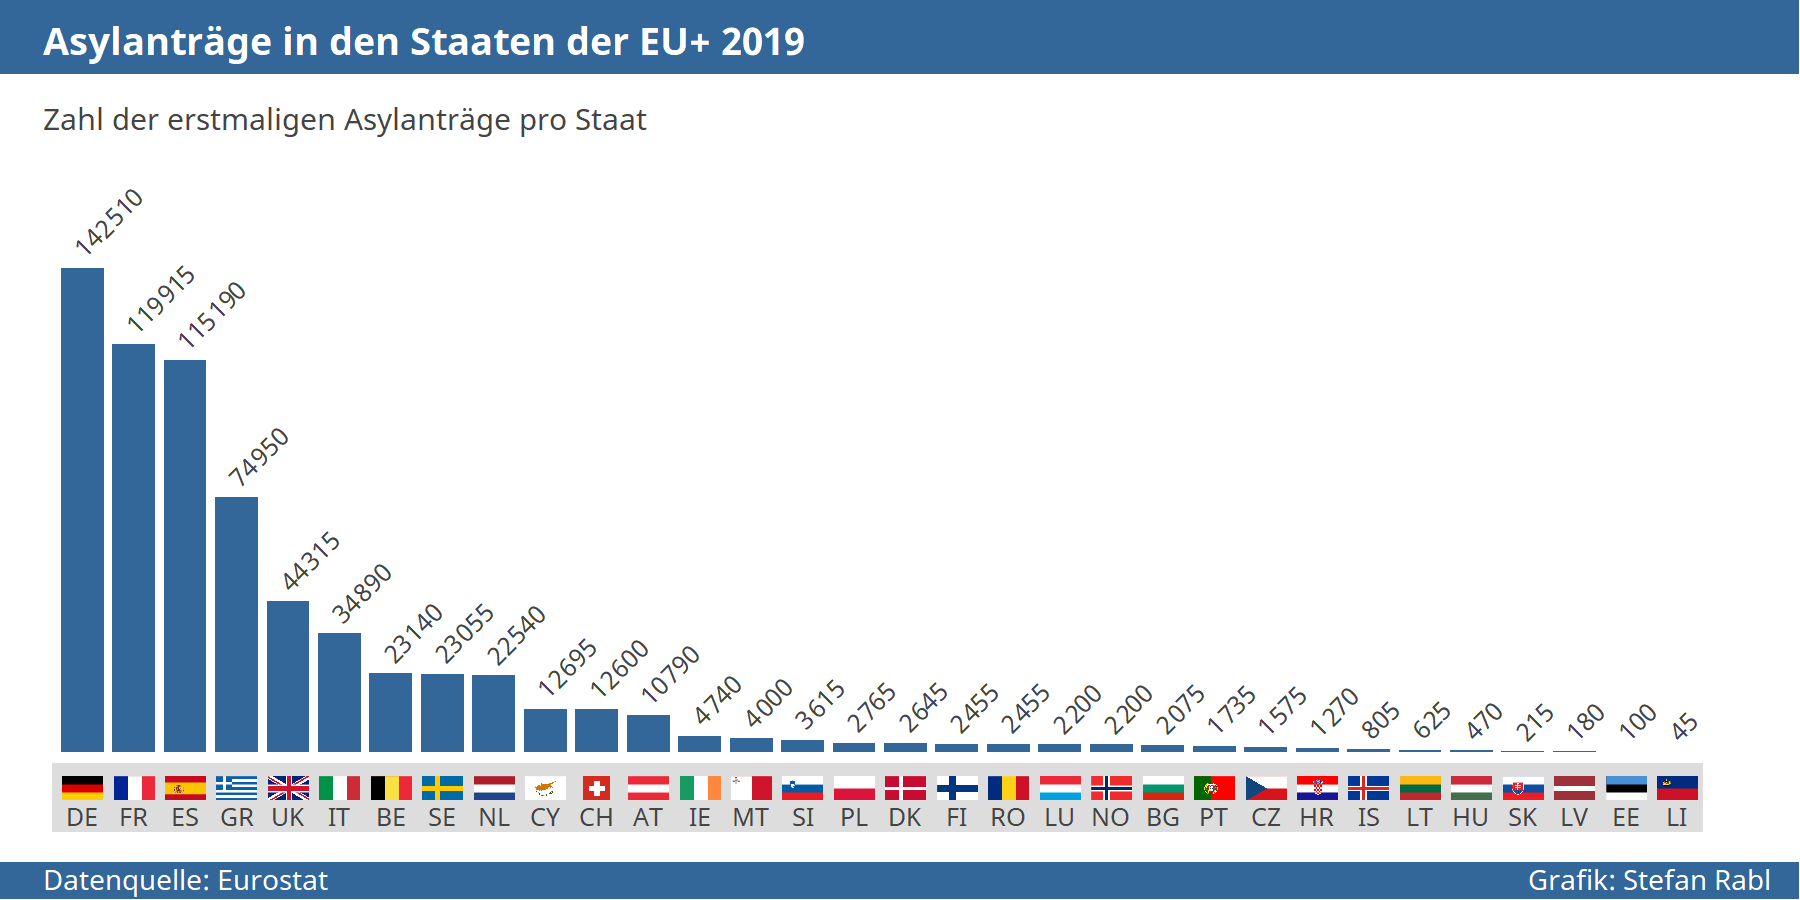 Grafik: Asylantragszahlen in den einzelnen EU+ Staaten 2019